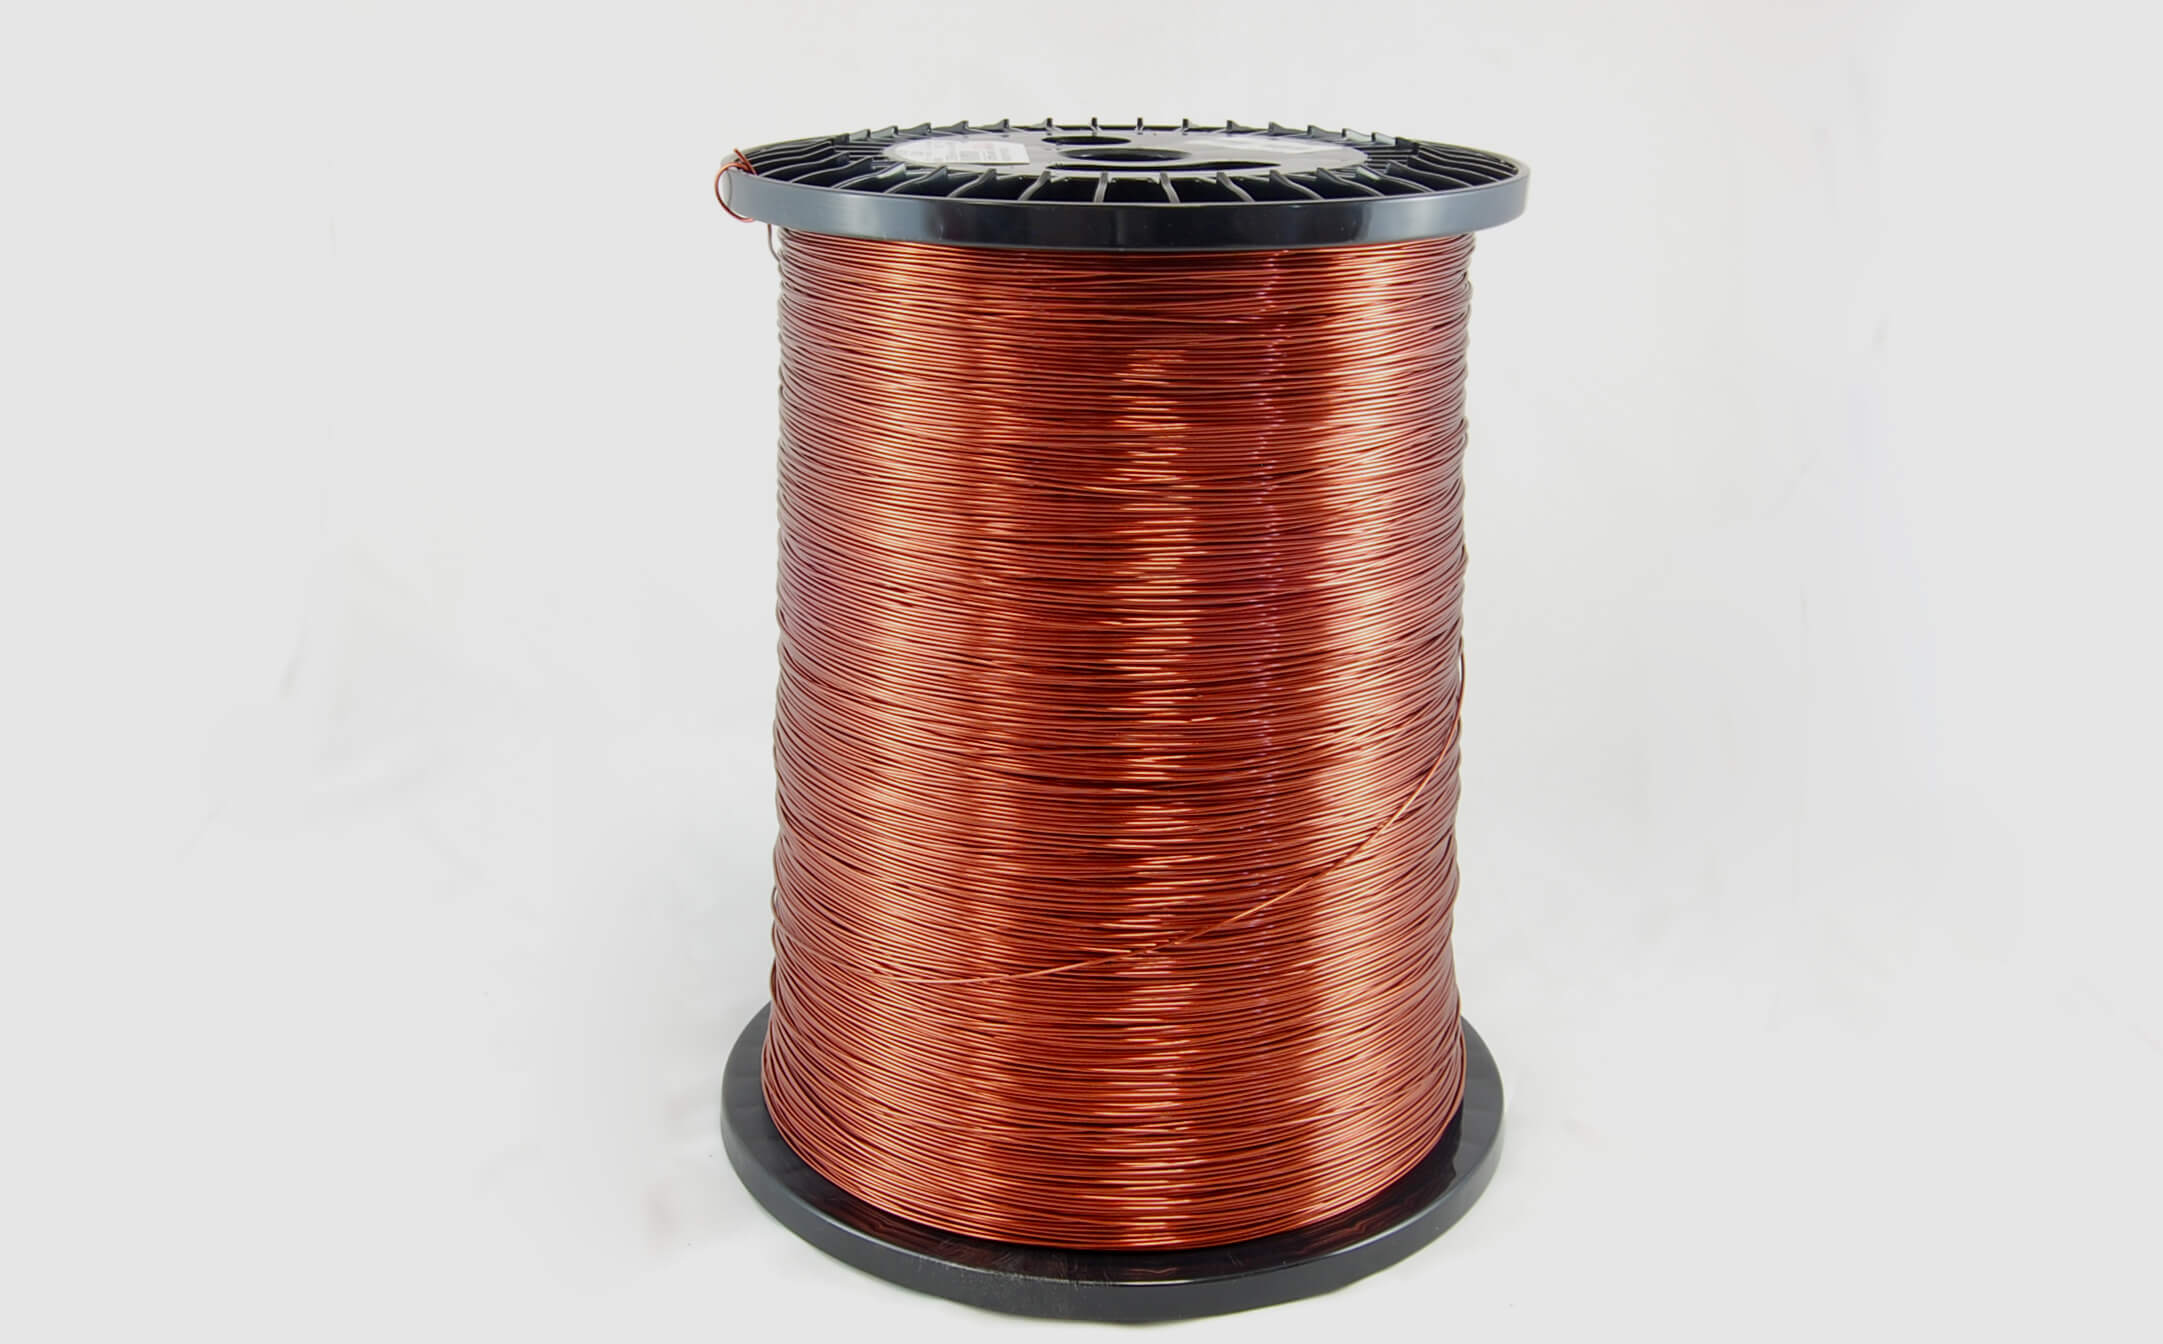 #13 Heavy Super Hyslik 200 Round HTAIH MW 35 Copper Magnet Wire 200°C, copper, 85 LB pail (average wght.)